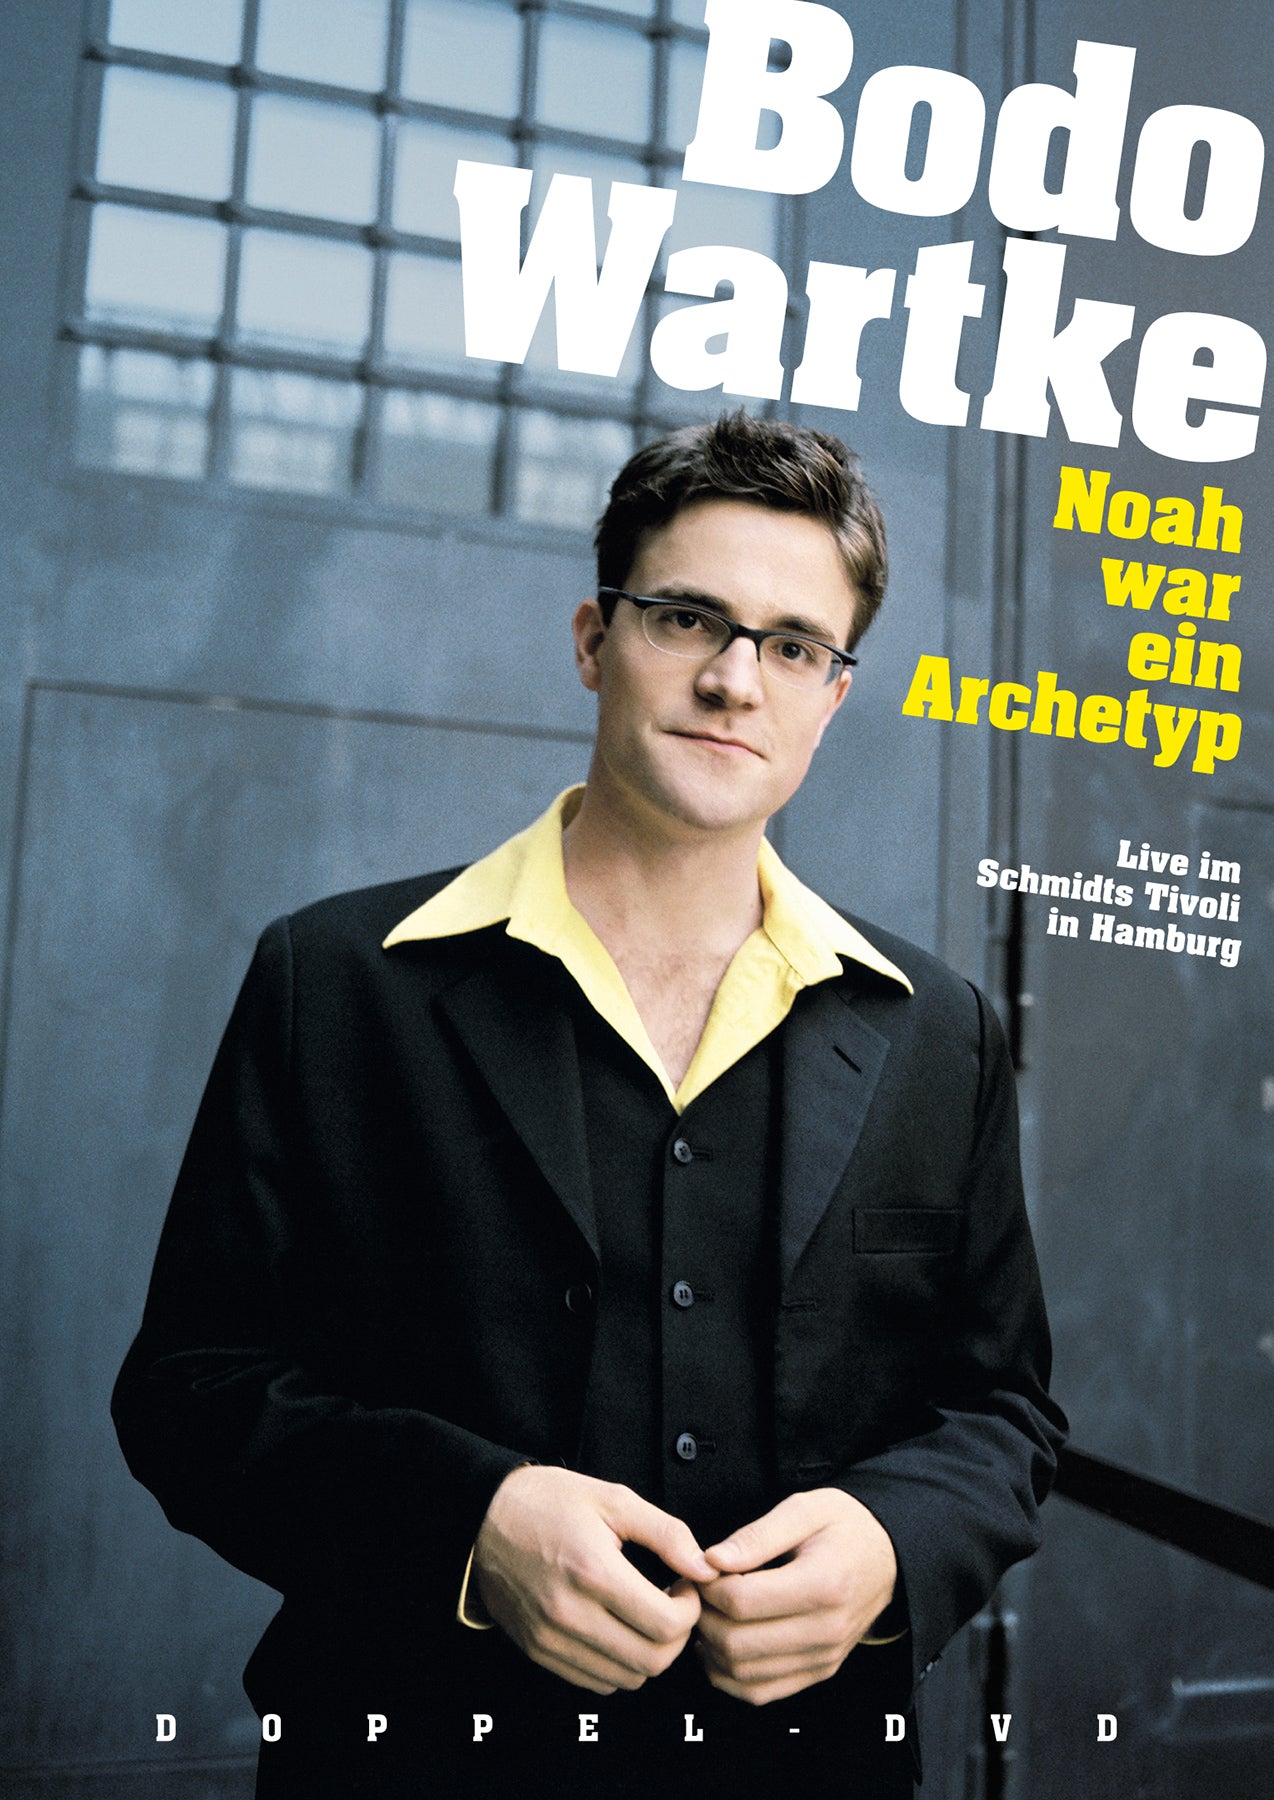 Noah war ein Archetyp - live in Hamburg - Doppel-DVD